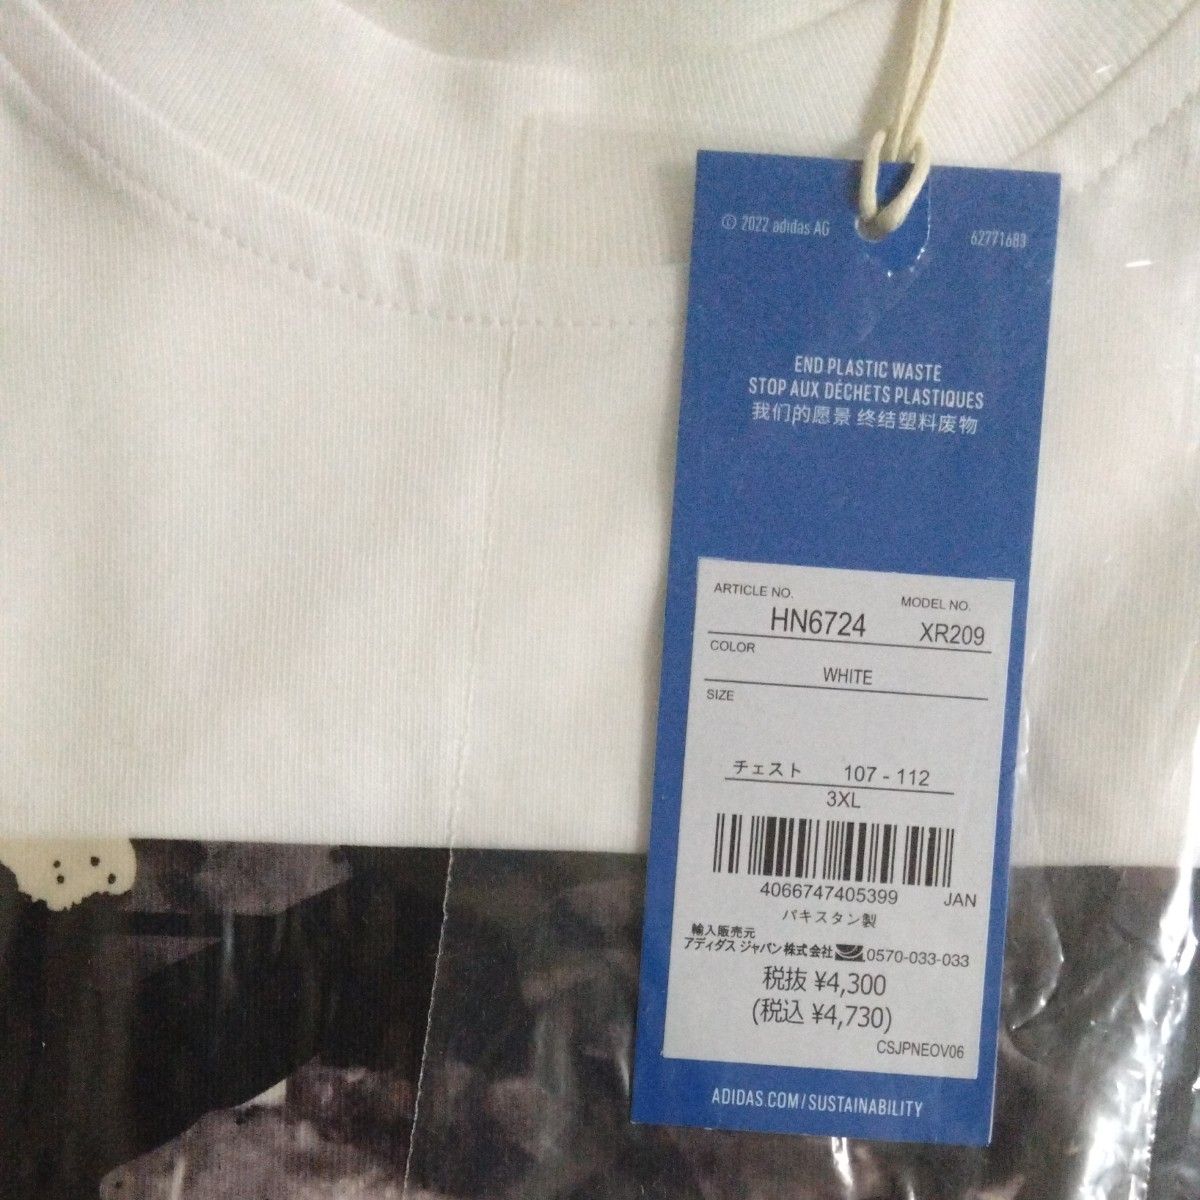 【4L】グラフィック カモ柄 Tシャツ 半袖Tシャツ 新品未使用 タグ付き アディダスオリジナルス レギュラーフィット